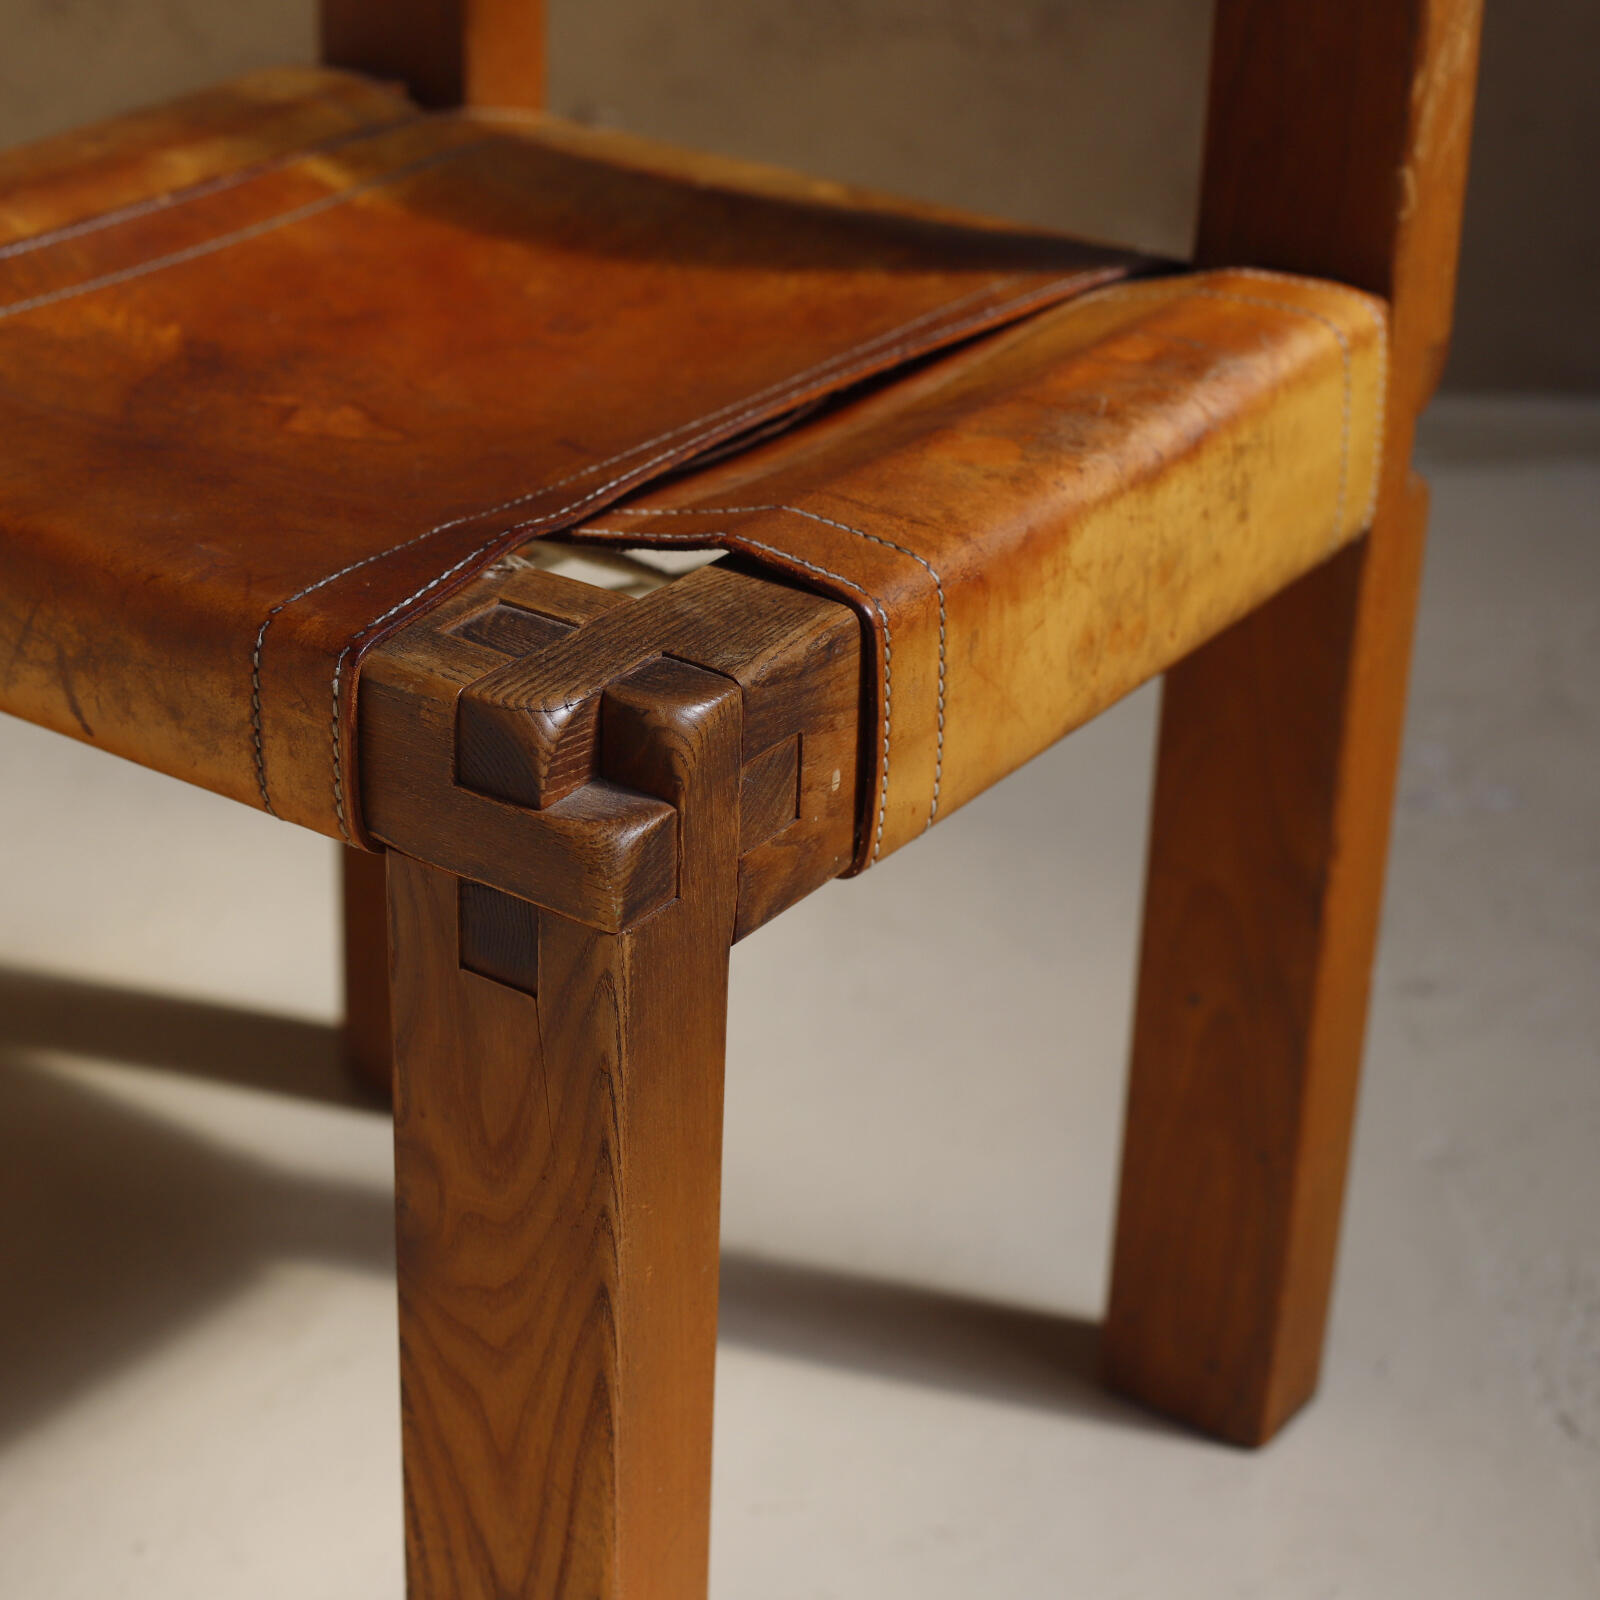 Model S11 Chair by Pierre Chapo - Objet d' art